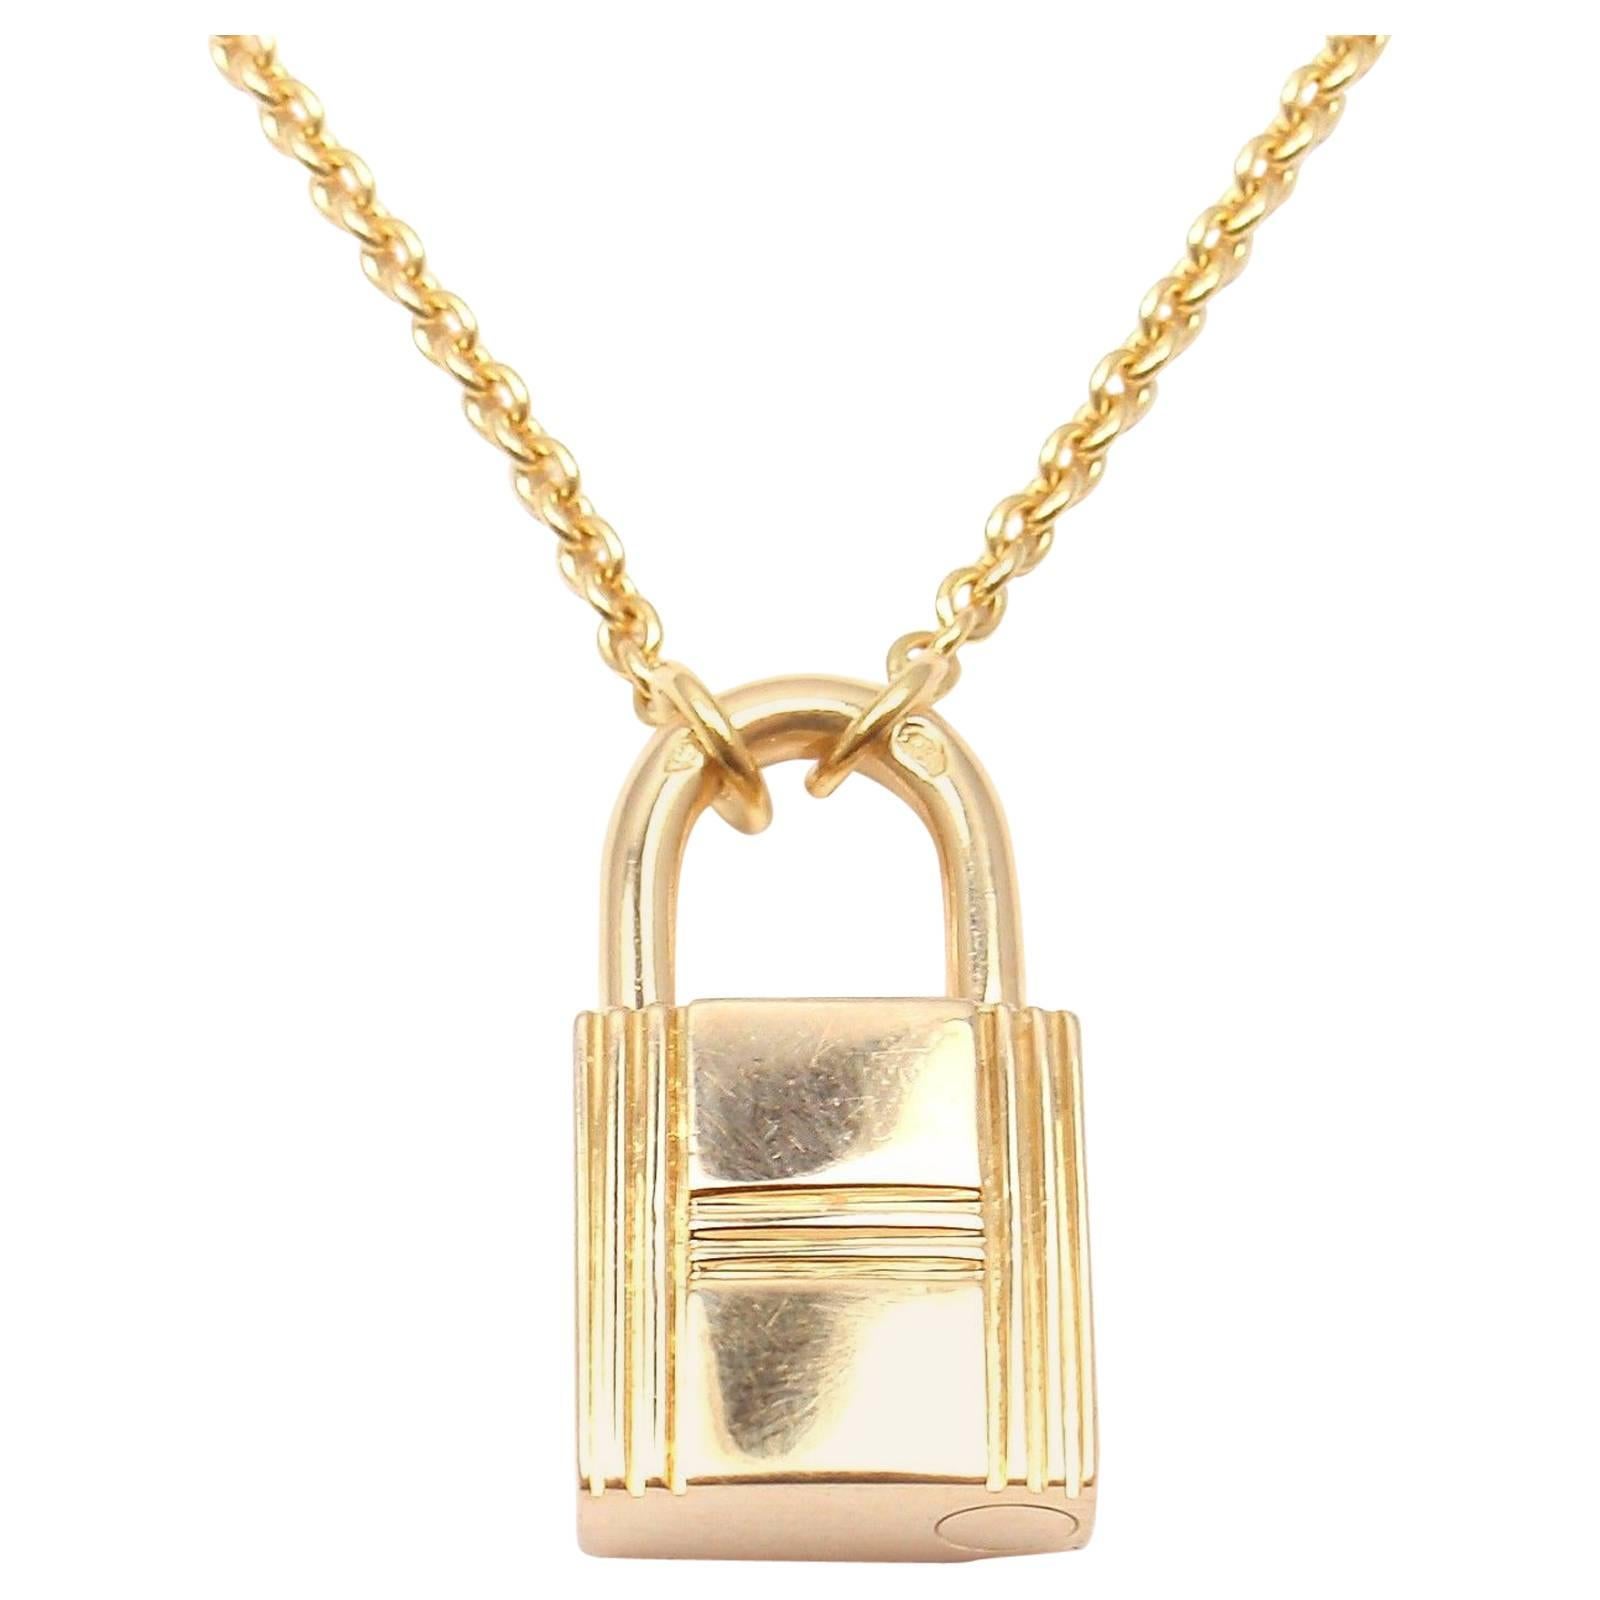 Hermes Paris Lock Pendant Gold Chain Necklace